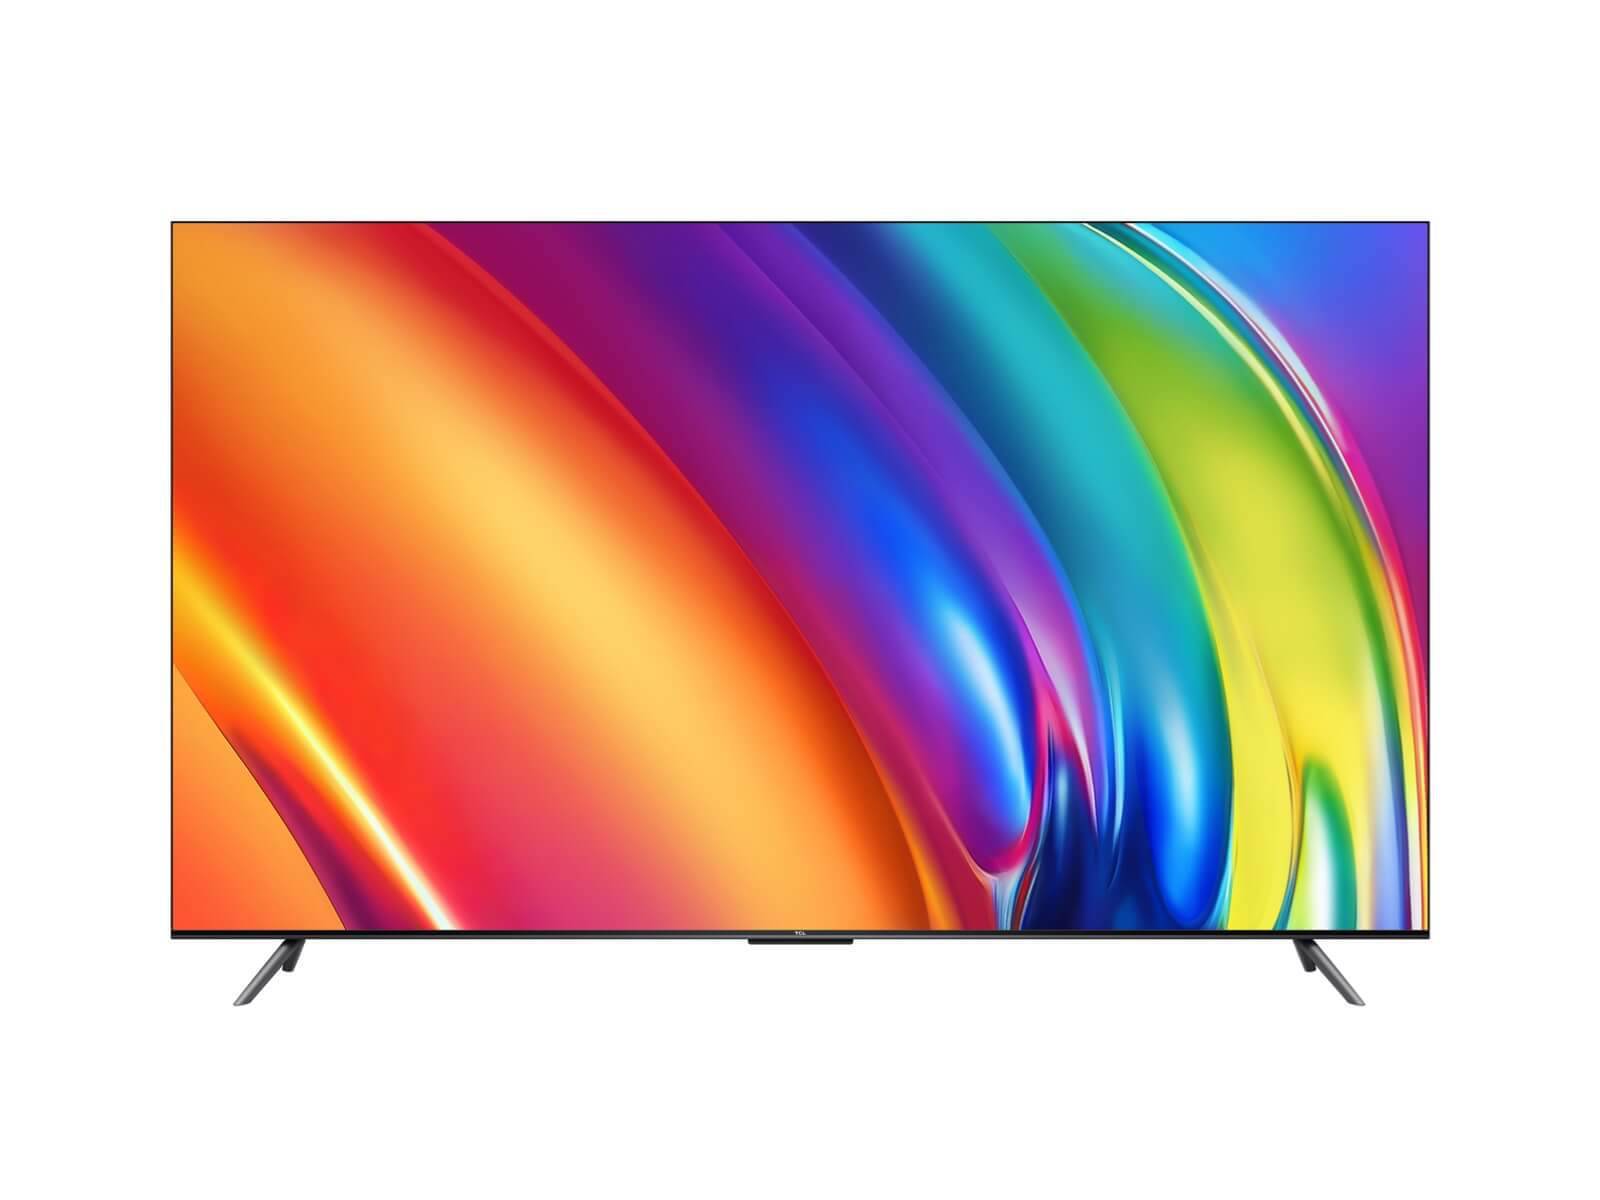 TCL представила относительно дешевый 98-дюймовый 4K-телевизор